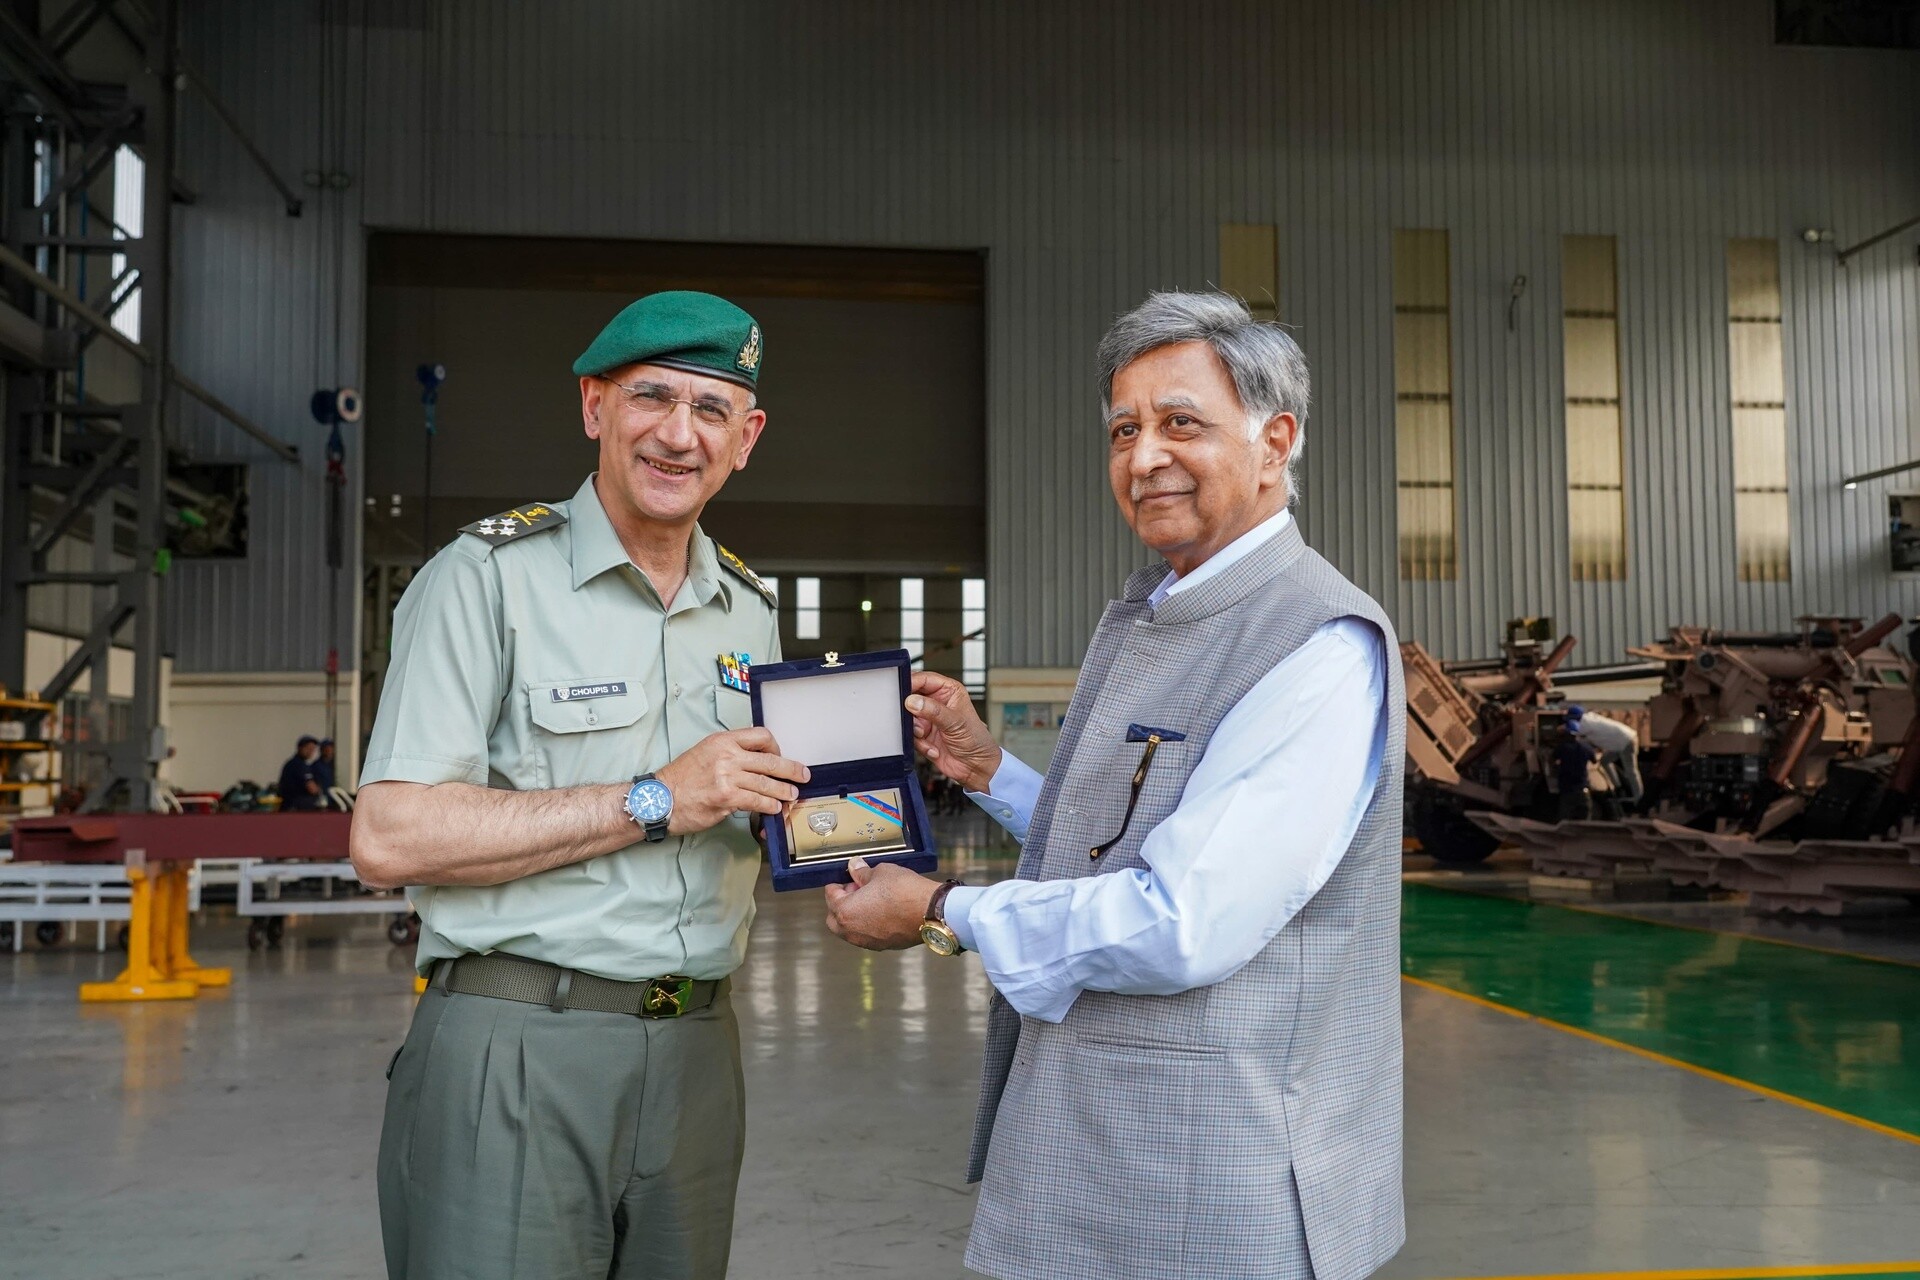 Ο Αρχηγός ΓΕΕΘΑ στην Ινδία - Νέα στρατιωτική συνεργασία και ανταλλαγή τεχνογνωσίας